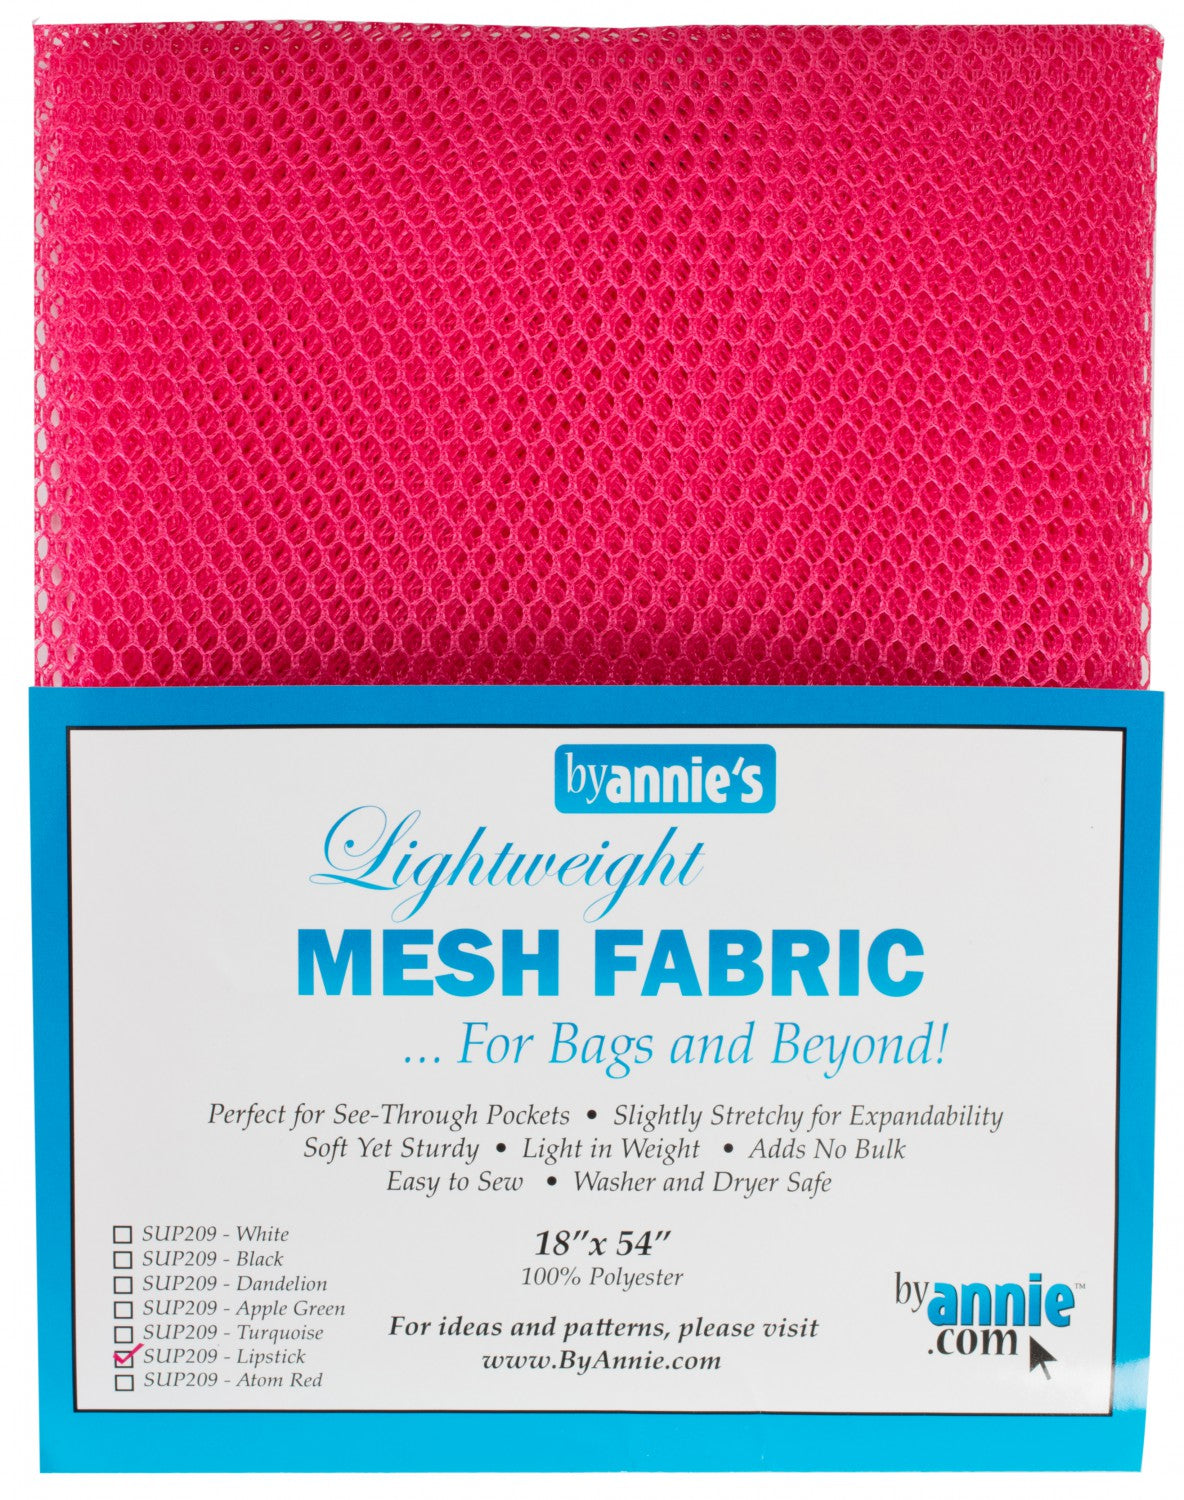 Mesh Fabric Lightweight 18"x 54" Lipstick - By Annie